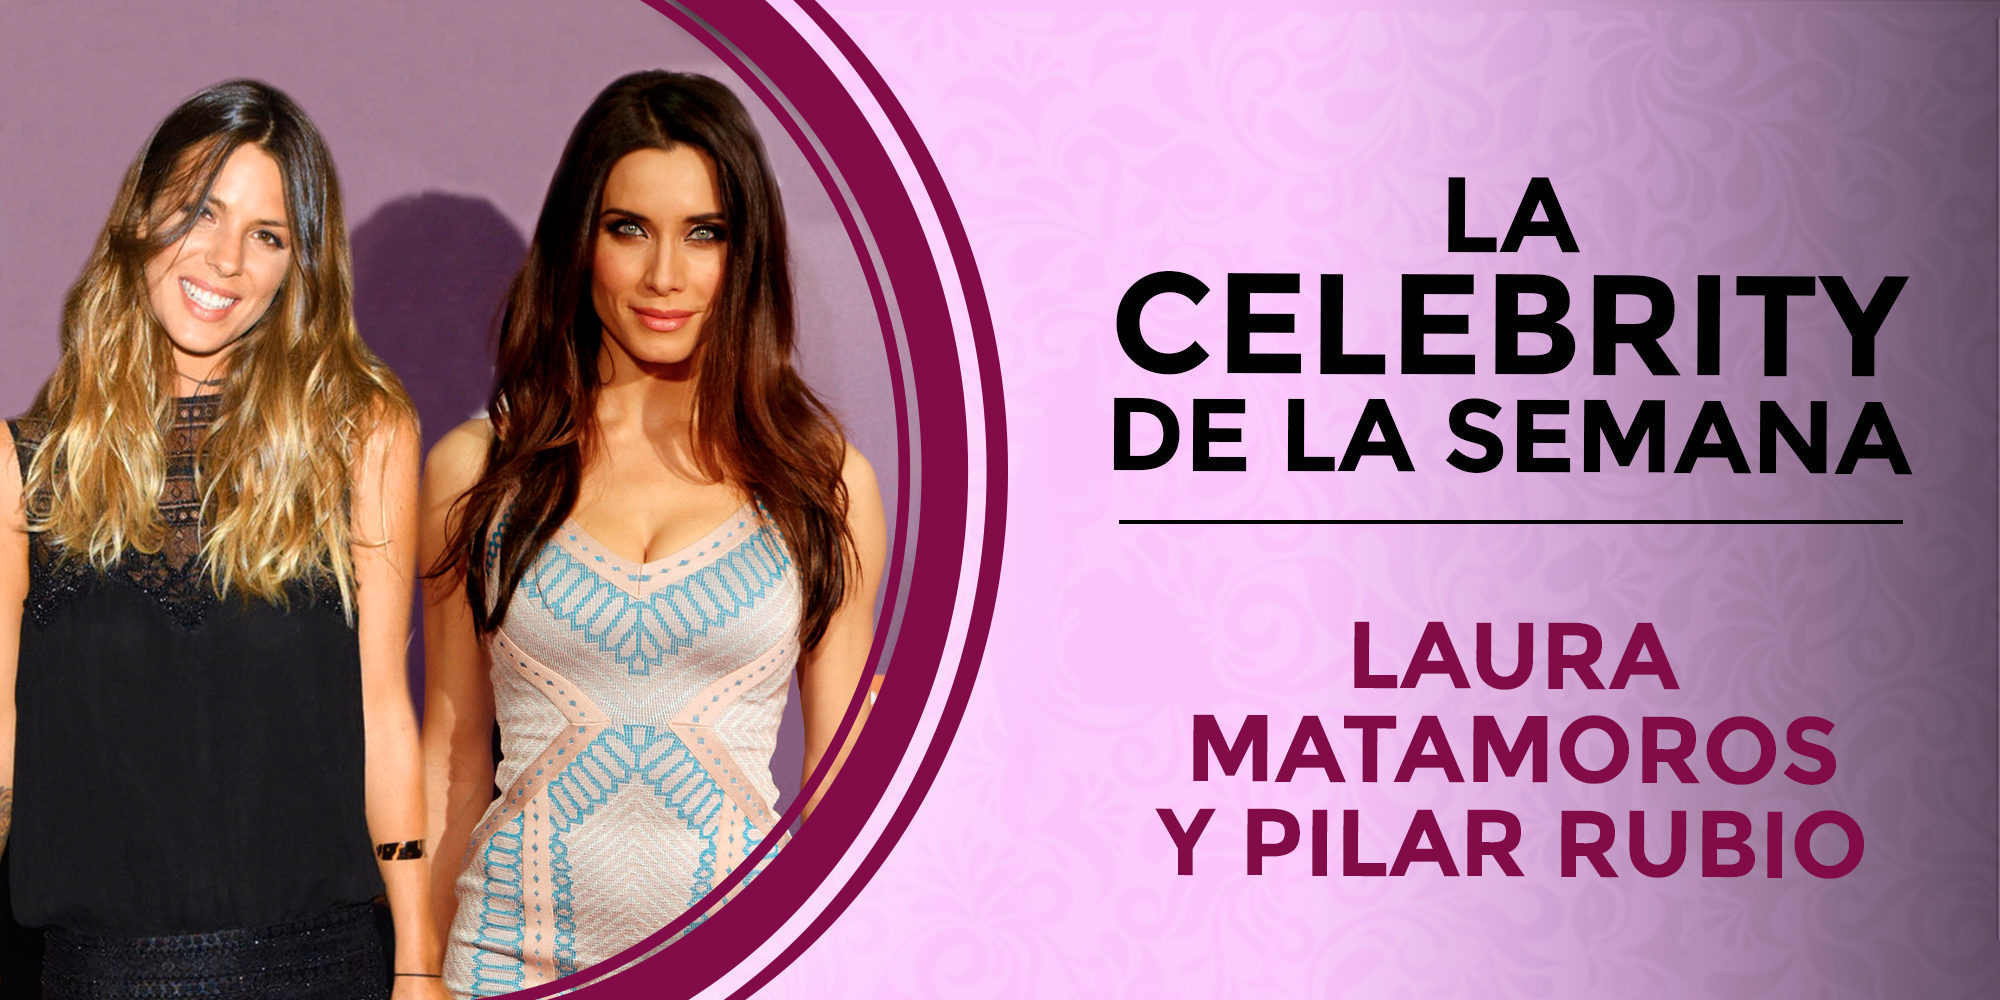 Laura Matamoros y Pilar Rubio, celebrities de la semana por sus sorprendentes embarazos